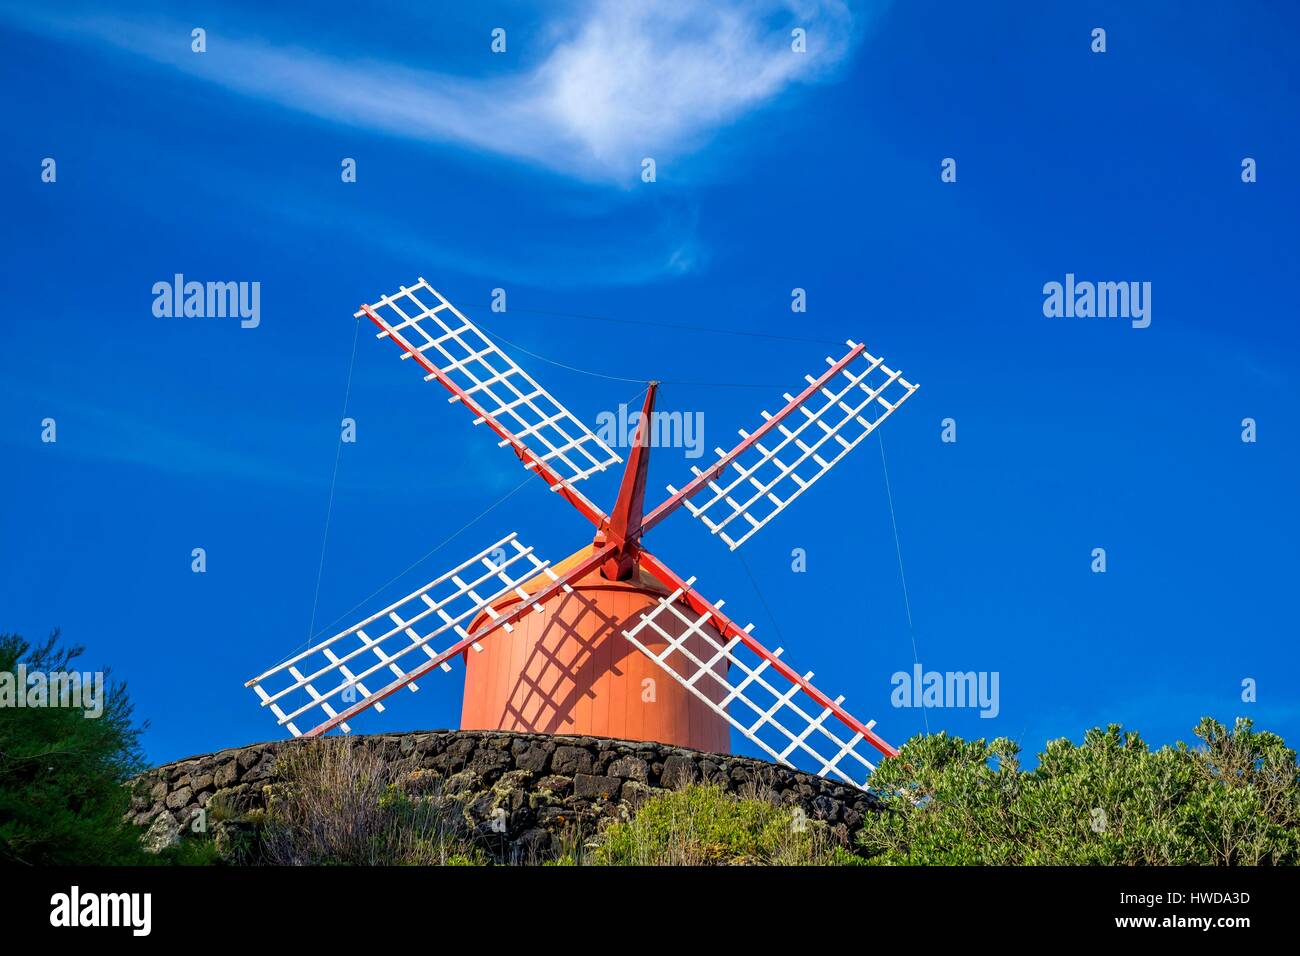 Portugal, Azores archipelago, Pico island, Calheta de Nesquim, Mourricao windmill Stock Photo